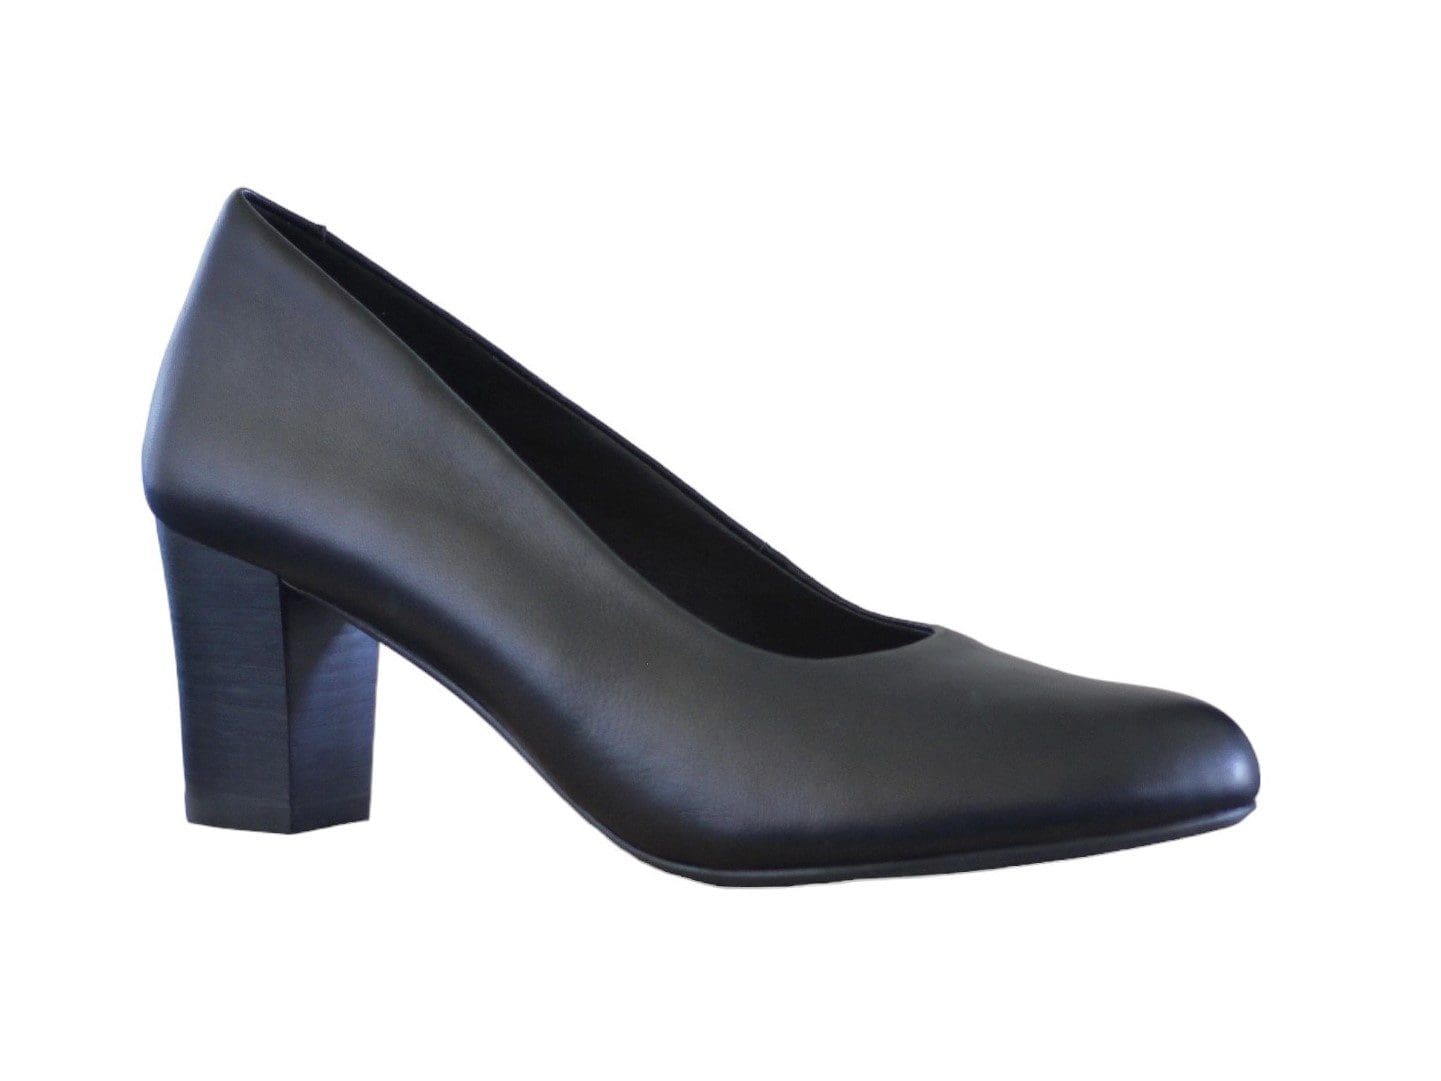 Zara Block Heel High Heels | Heels, Trending shoes, High heels